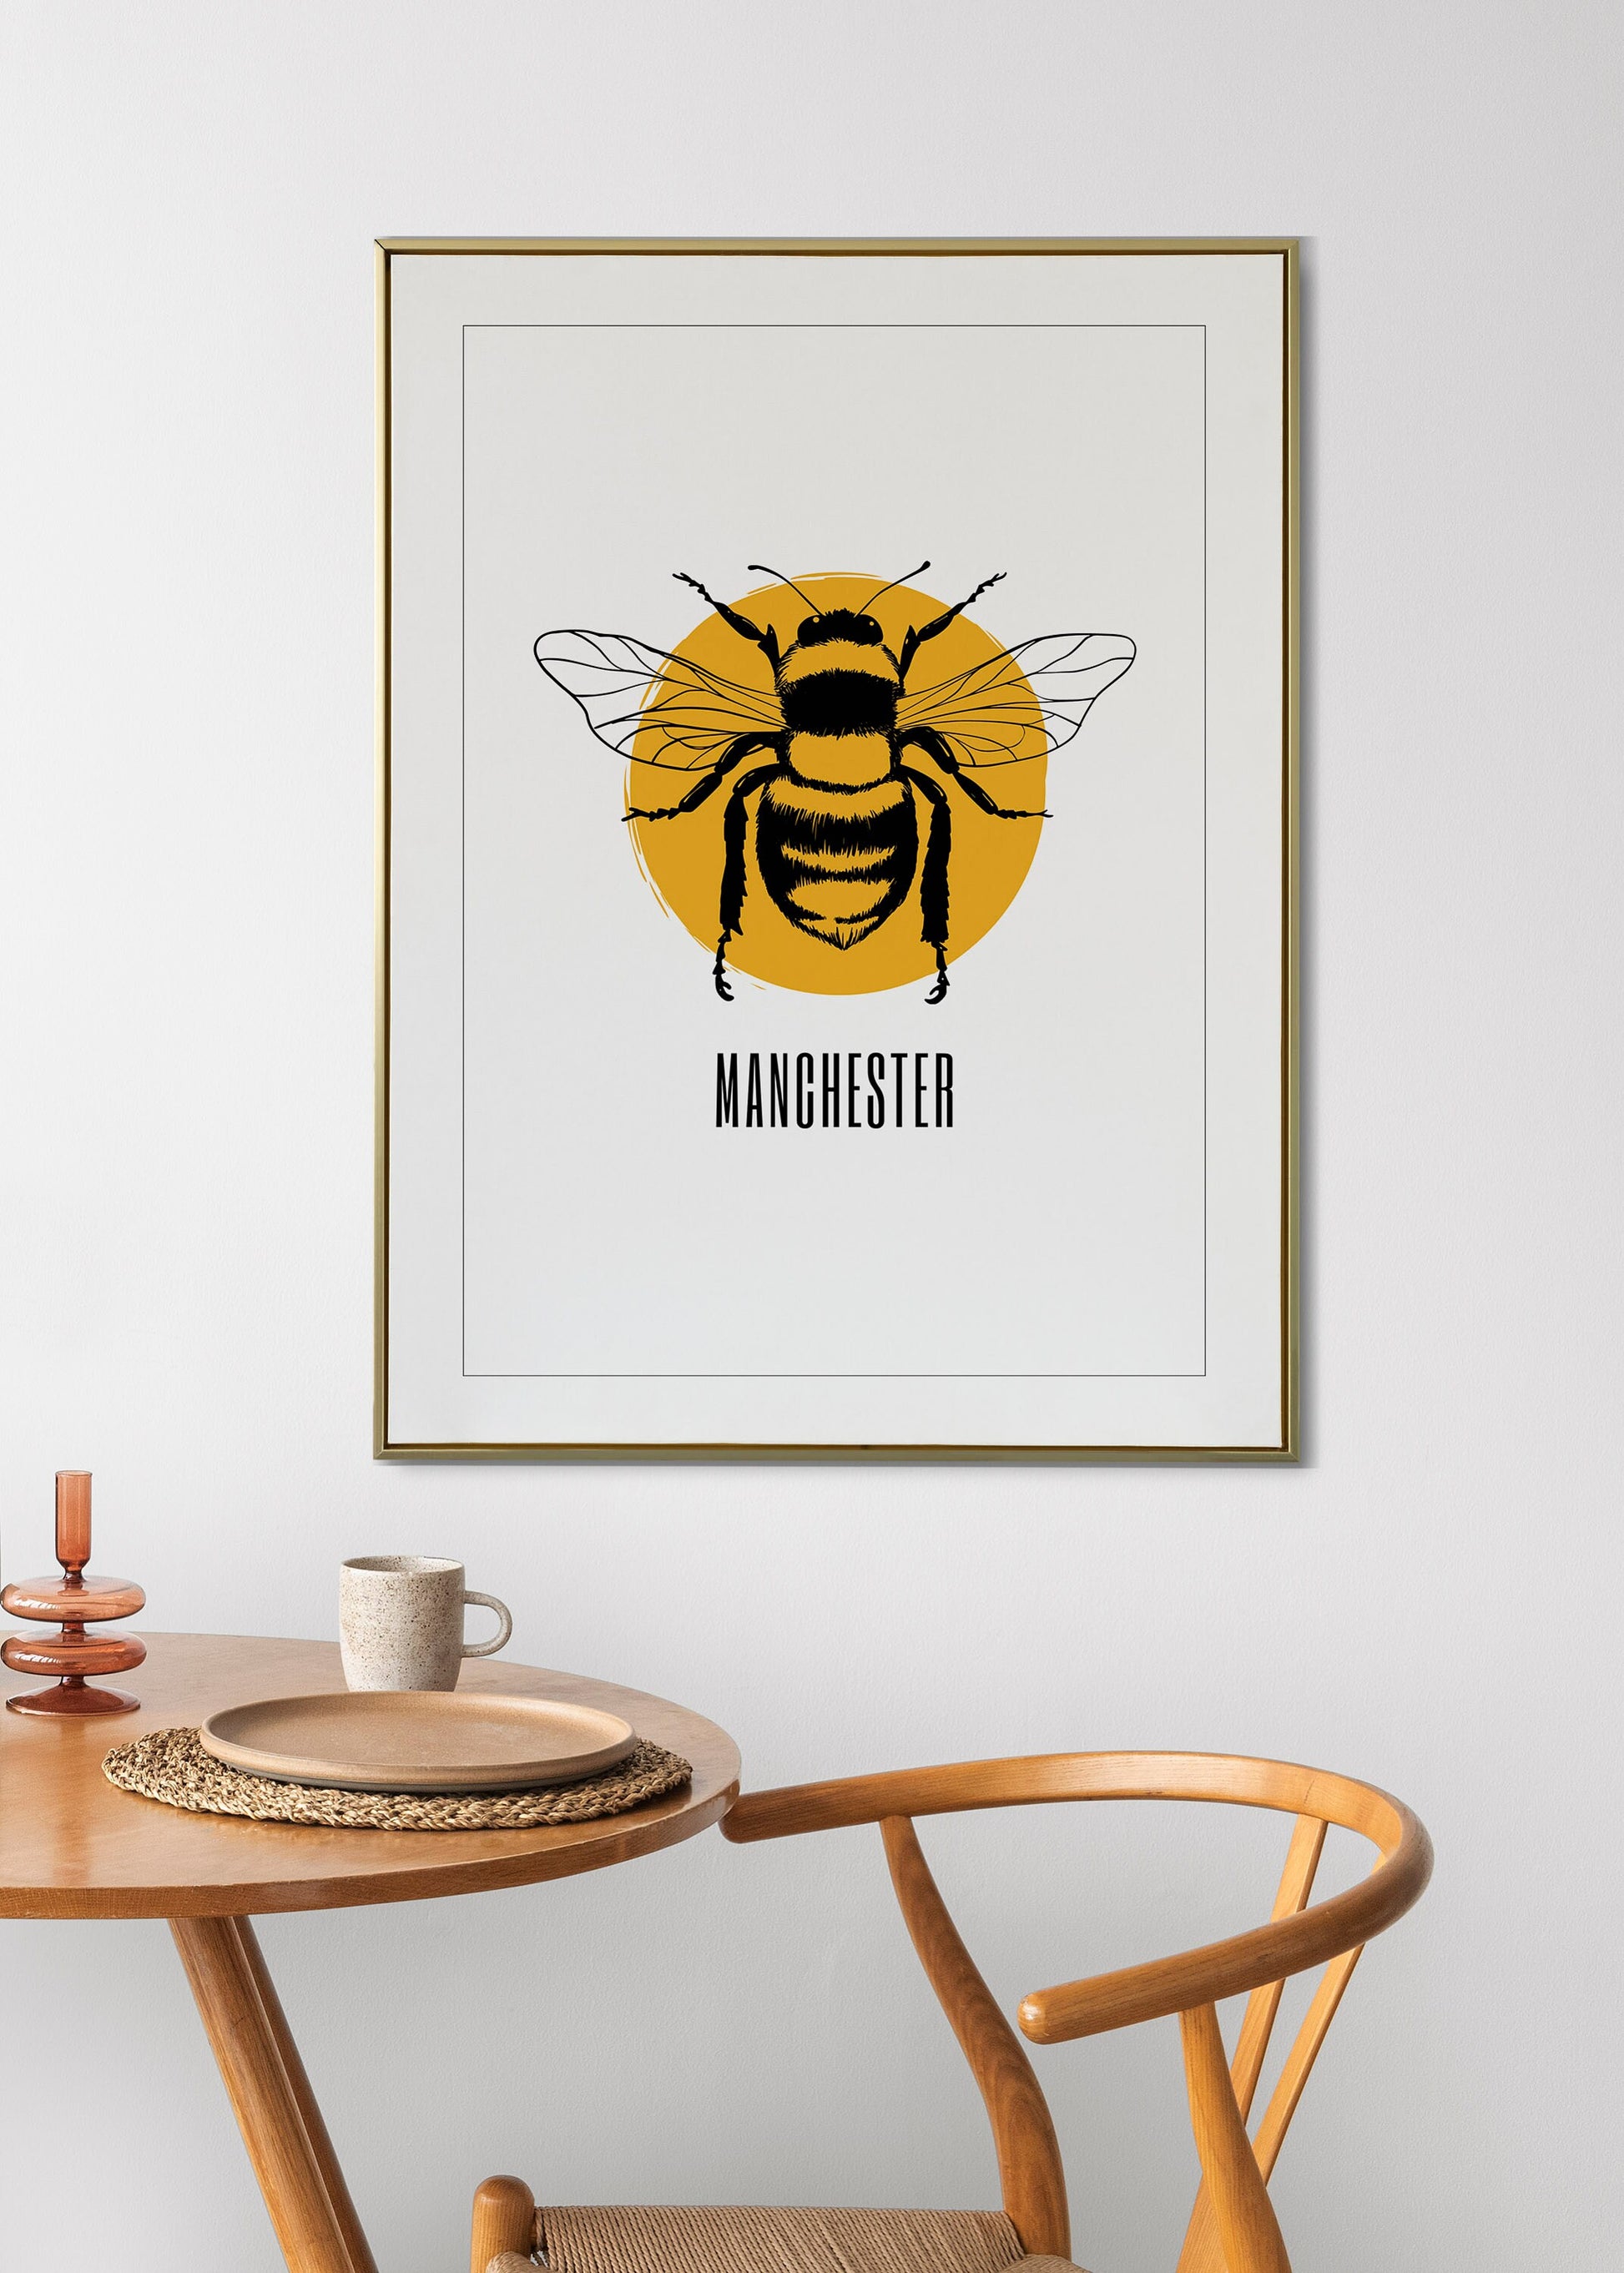 Manchester Bee Print, Manchester City Art Print, Manchester Bee,  Manchester Print Unframed, A5/A4/A3/A2, Manchester Bee, Love Manchester,